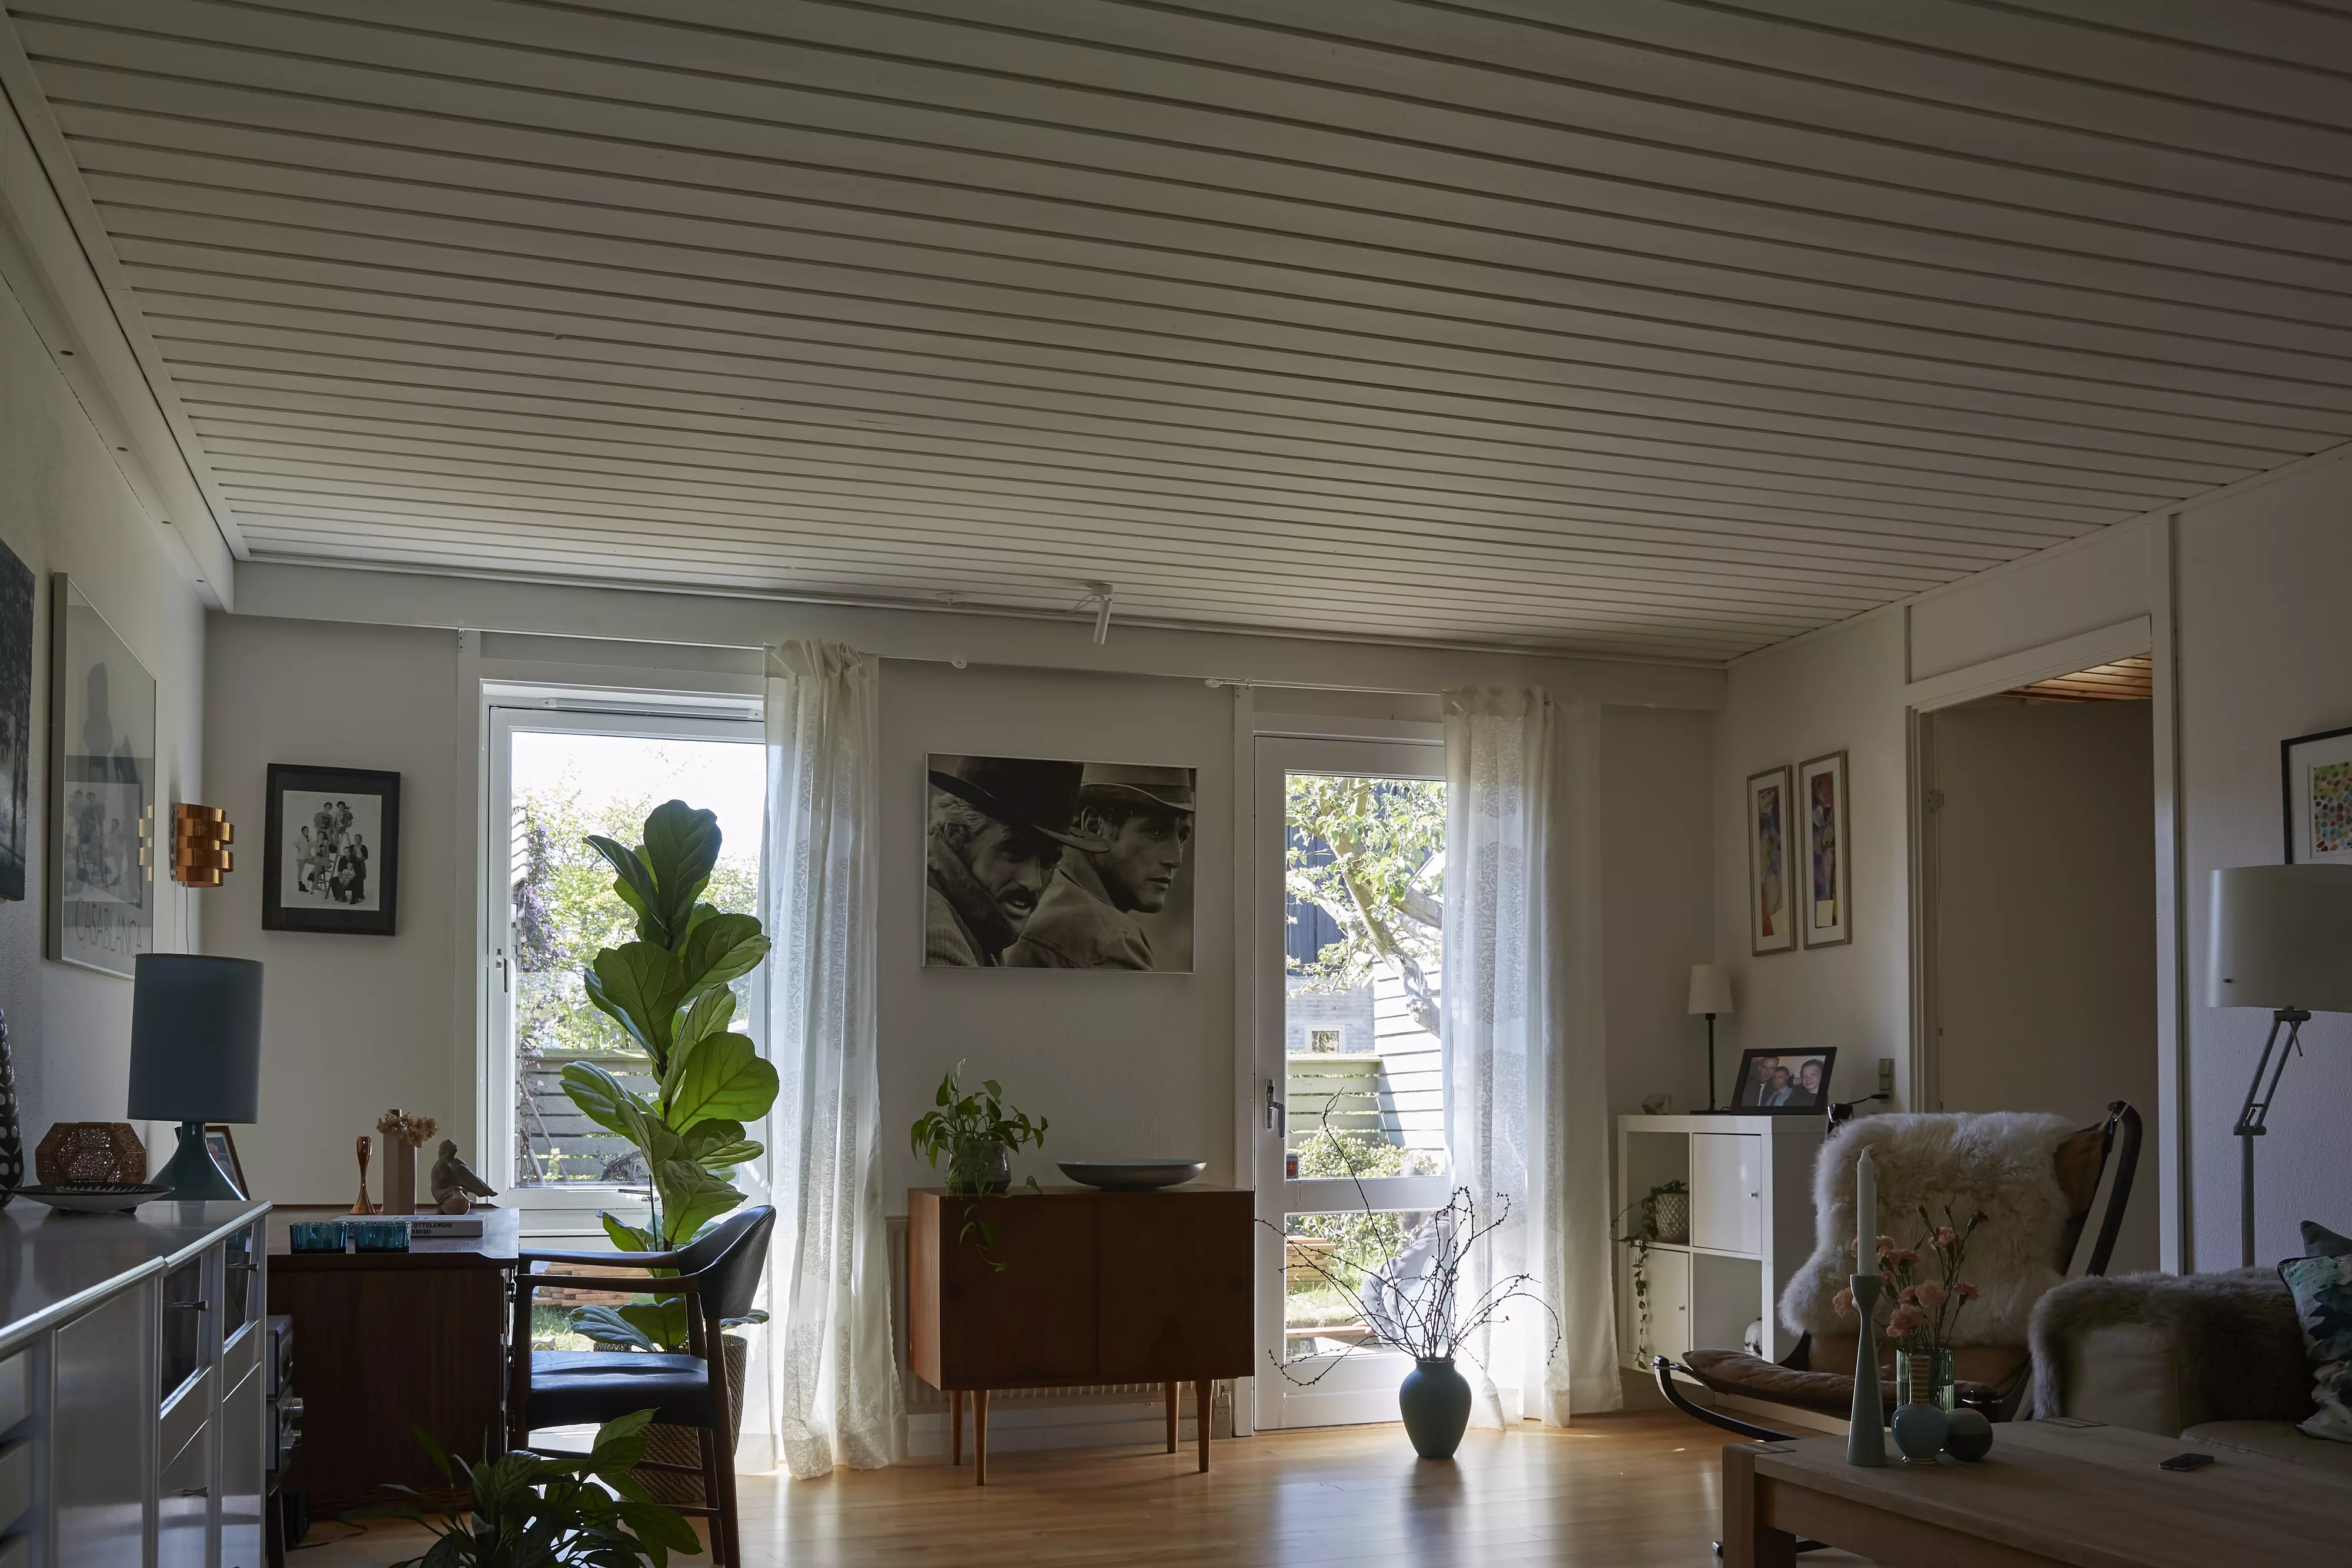 Modernes Wohnzimmer mit Tageslicht, Pflanzen und zeitgenössischen Möbeln.